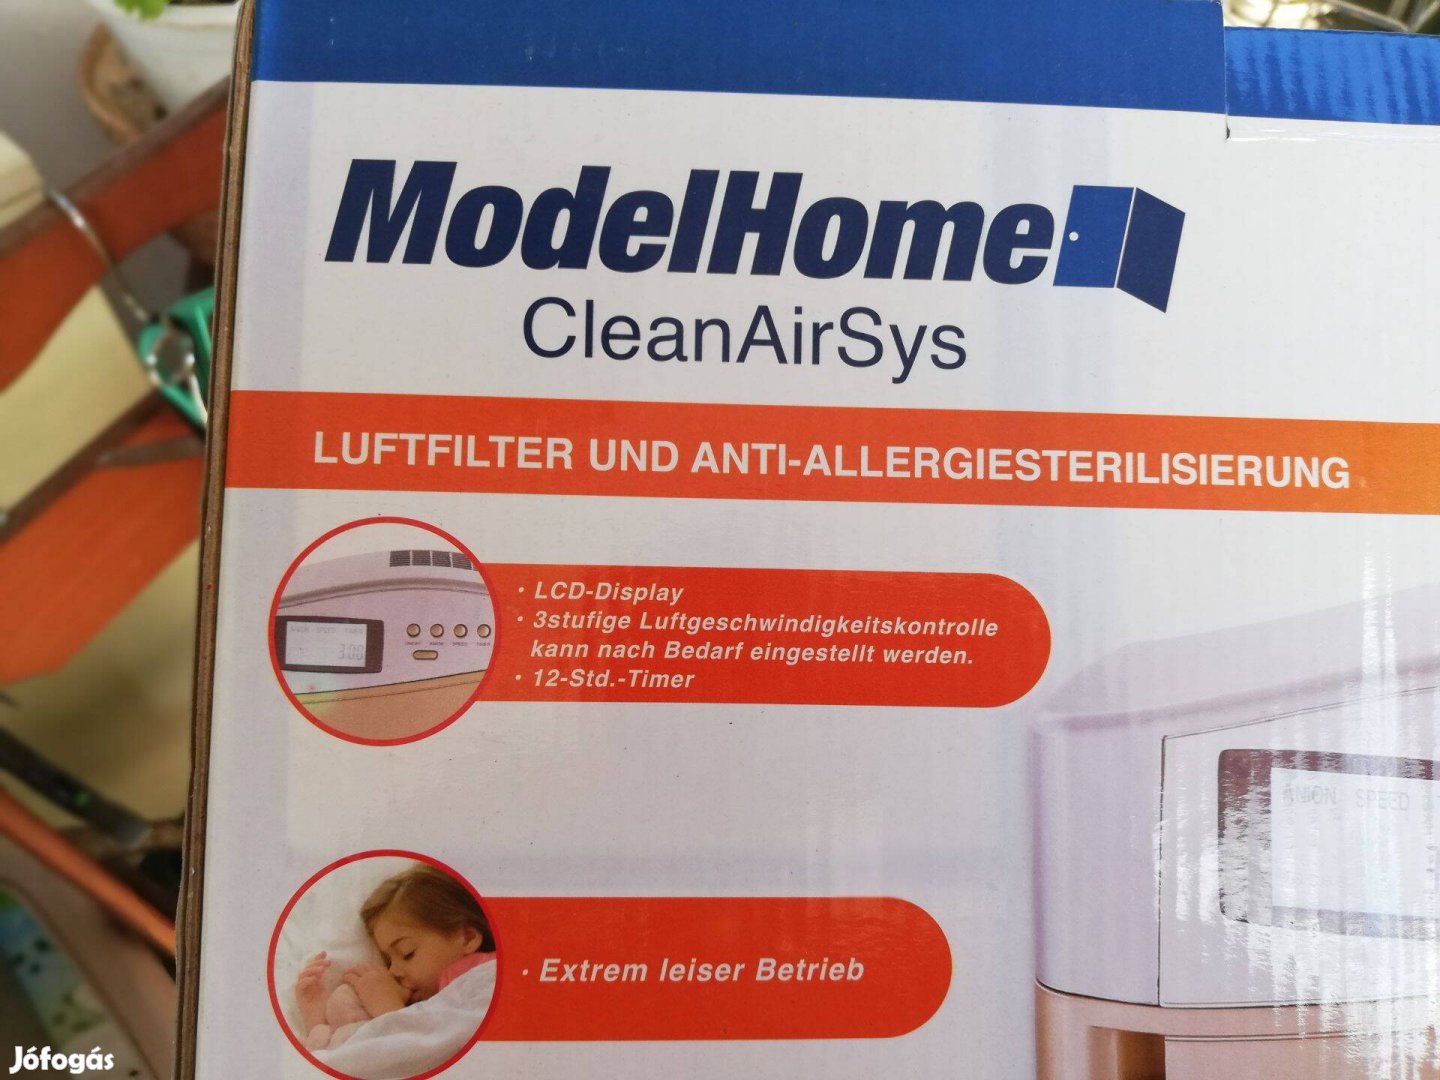 Modelhome clean air sys légtisztító - távvezérlő nélkül 4000 forint